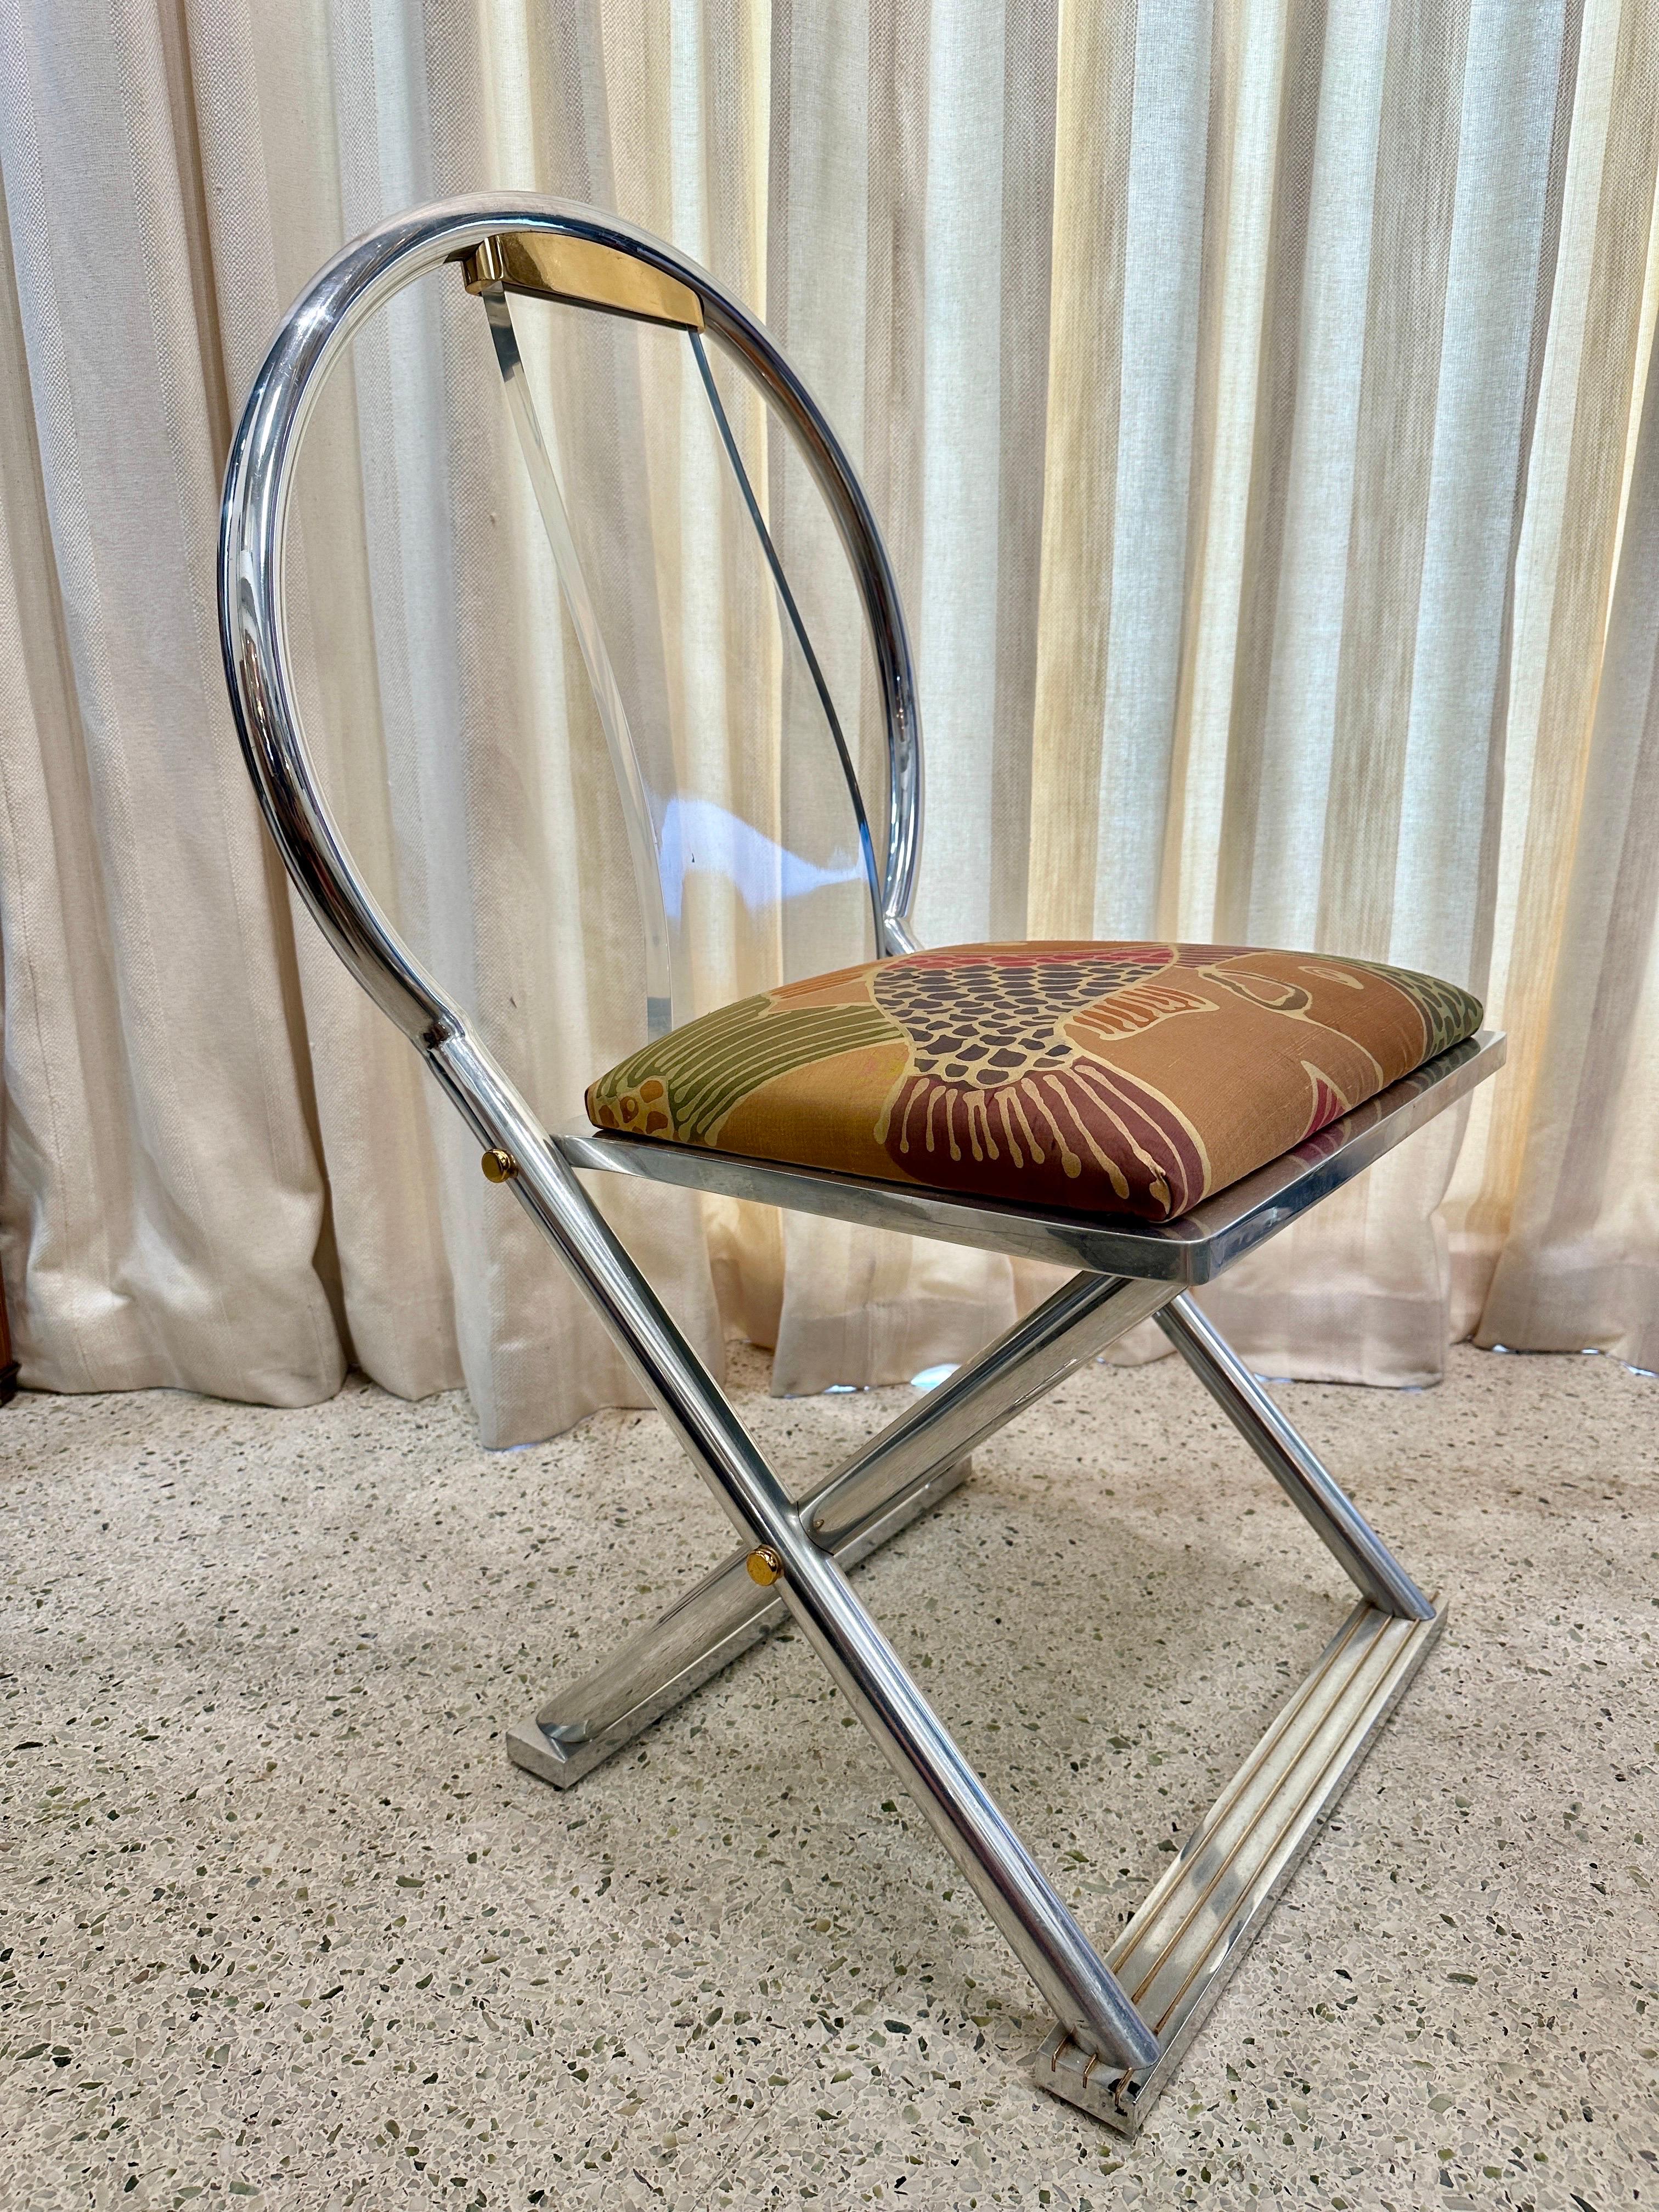 Dieser dokumentierte, seltene Stuhl von Karl Springer, der in seinem Katalog der Originalkreationen zu finden ist, ist aus verchromtem Stahl, Messing und Lucit gefertigt. Das Sitzkissen ist mit feiner Seide gepolstert und mit einer lebendigen